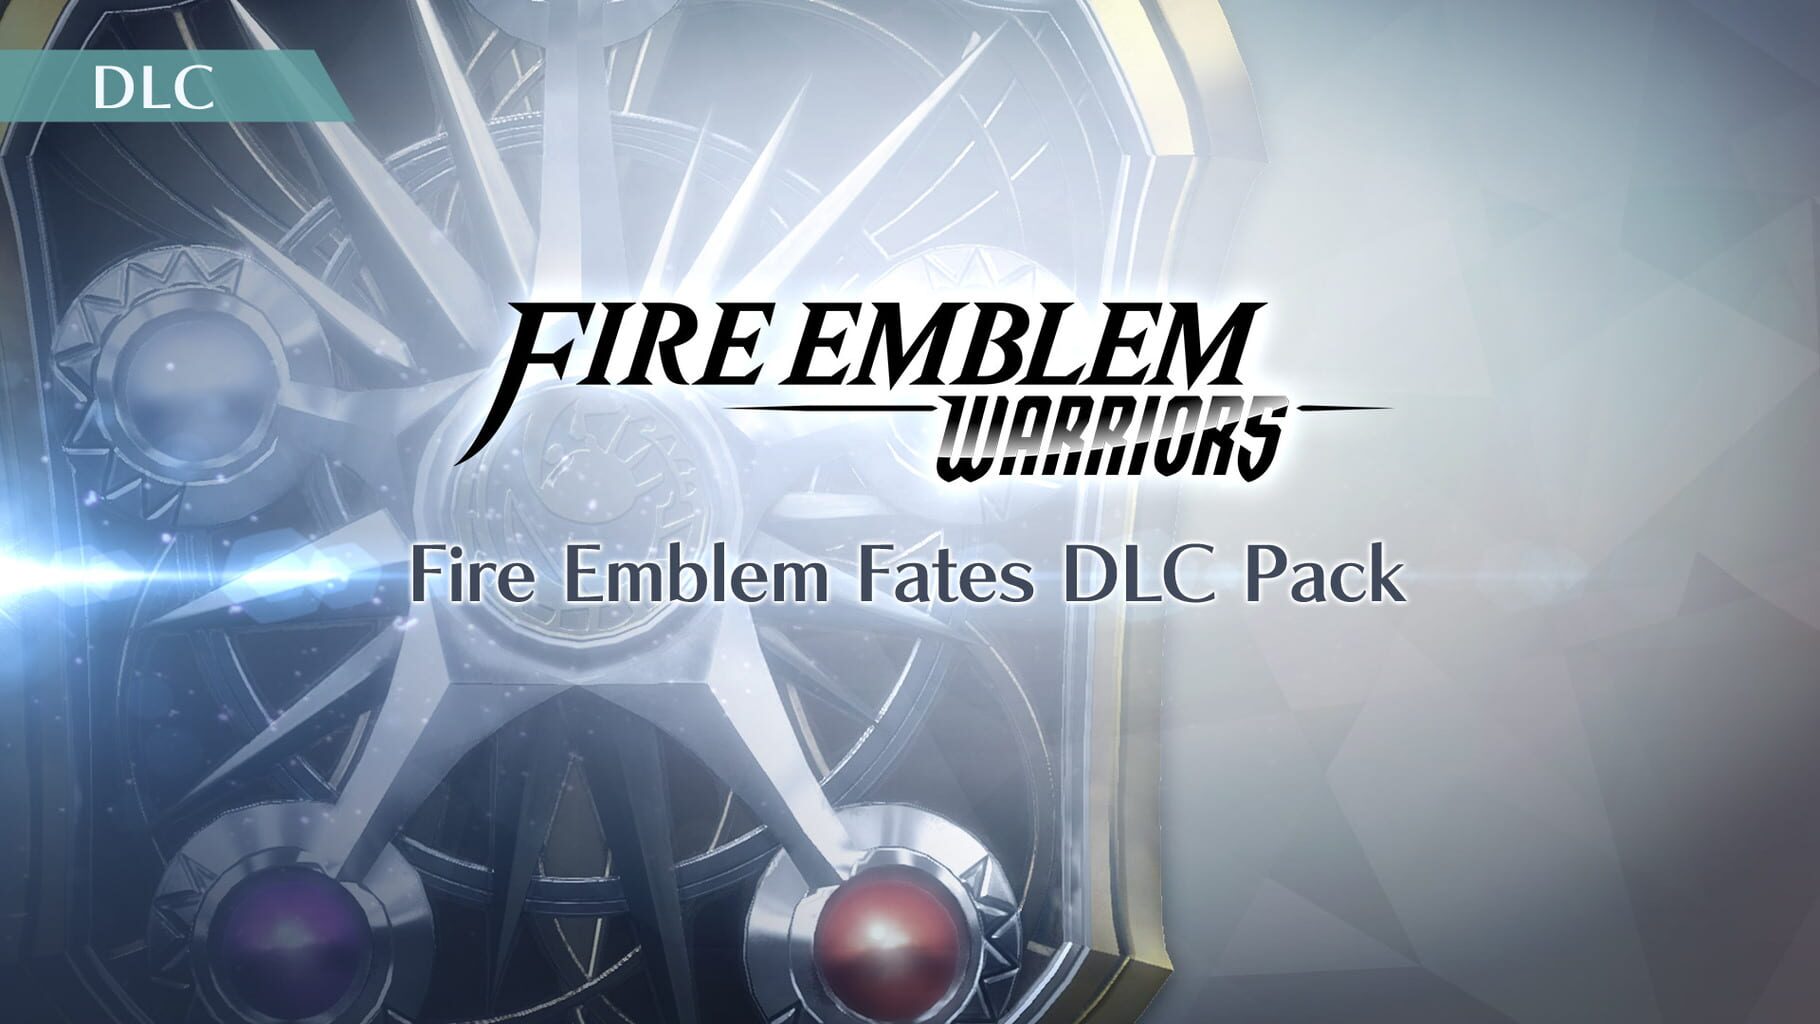 Fire Emblem Warriors: Fire Emblem Fates DLC Pack artwork